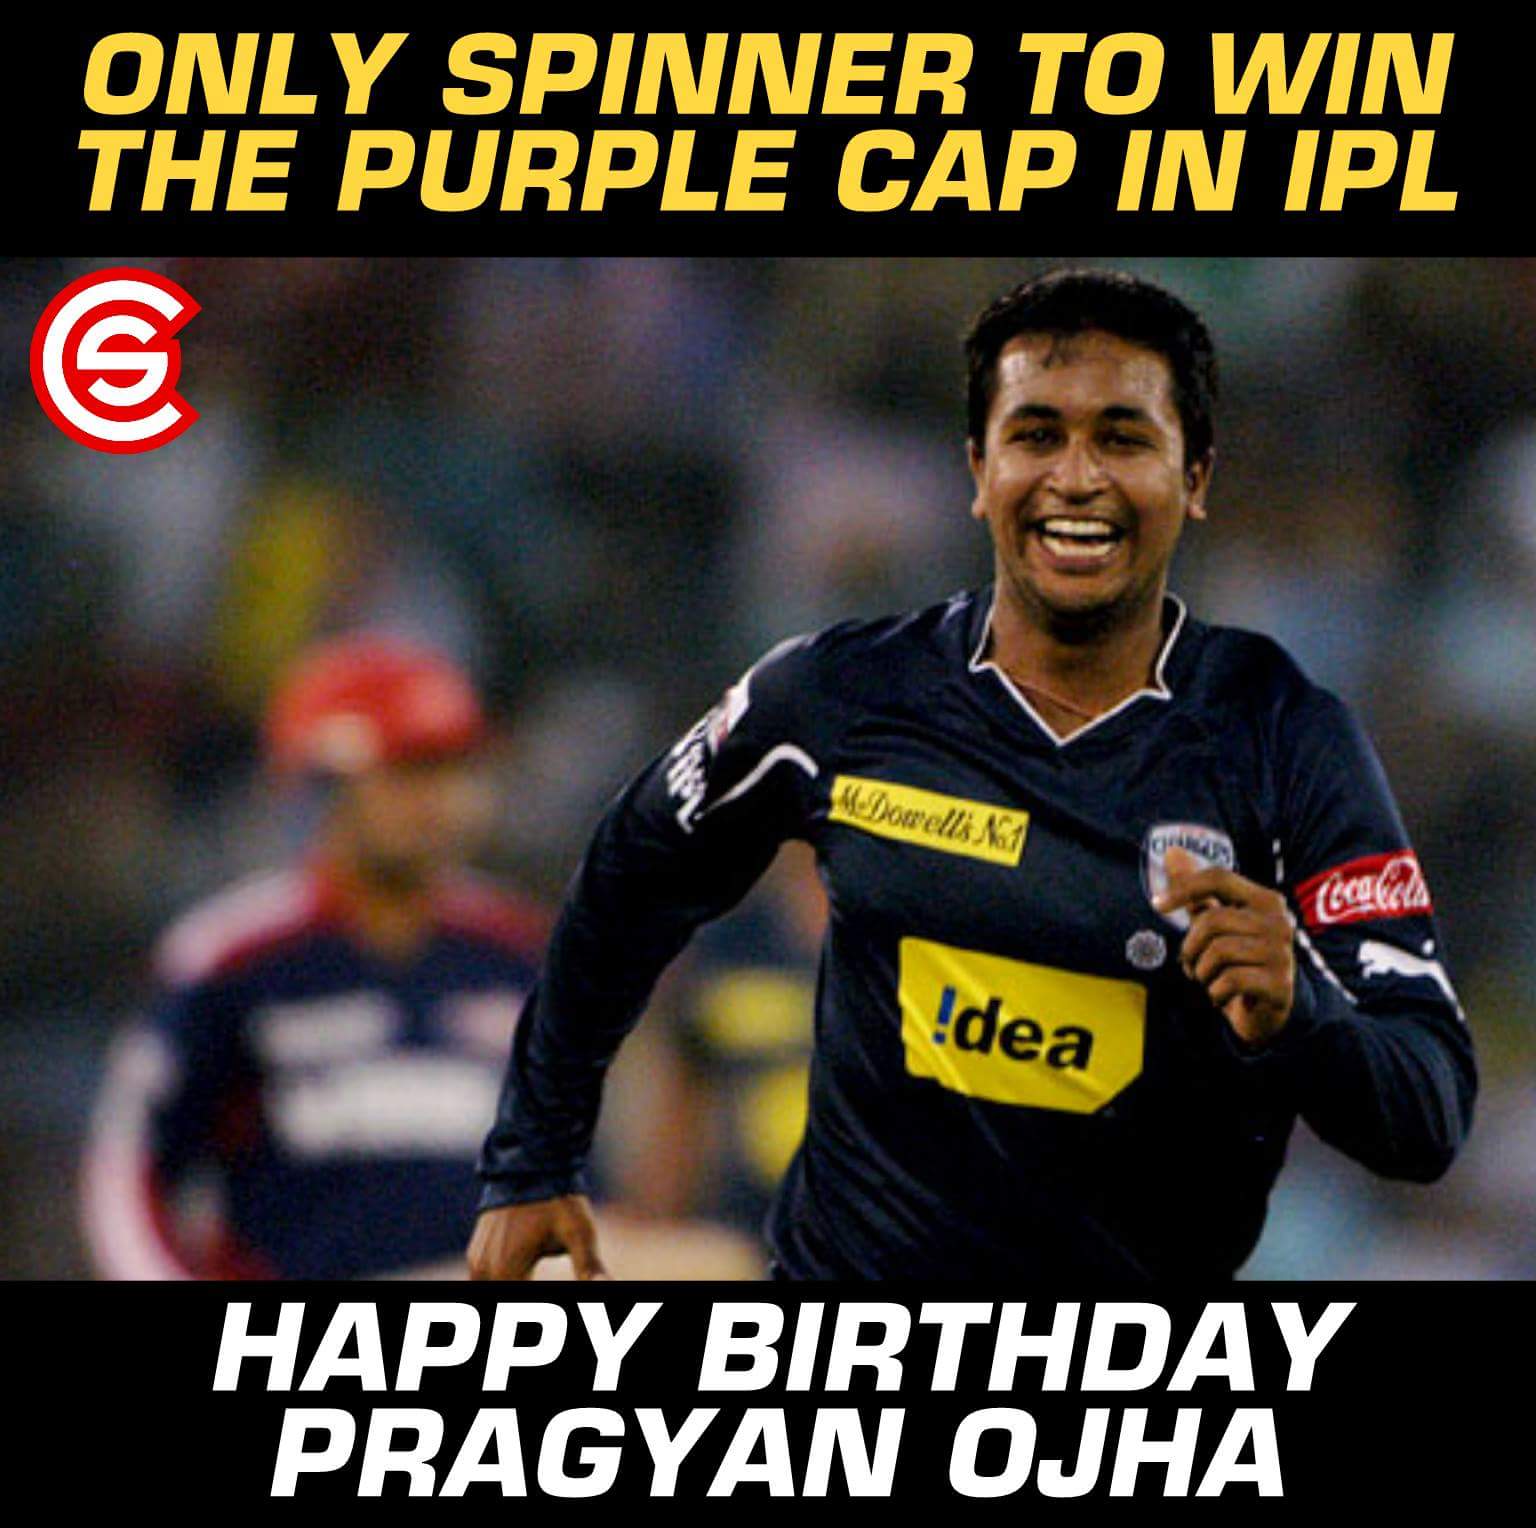 Happy Birthday, Pragyan Ojha!! 